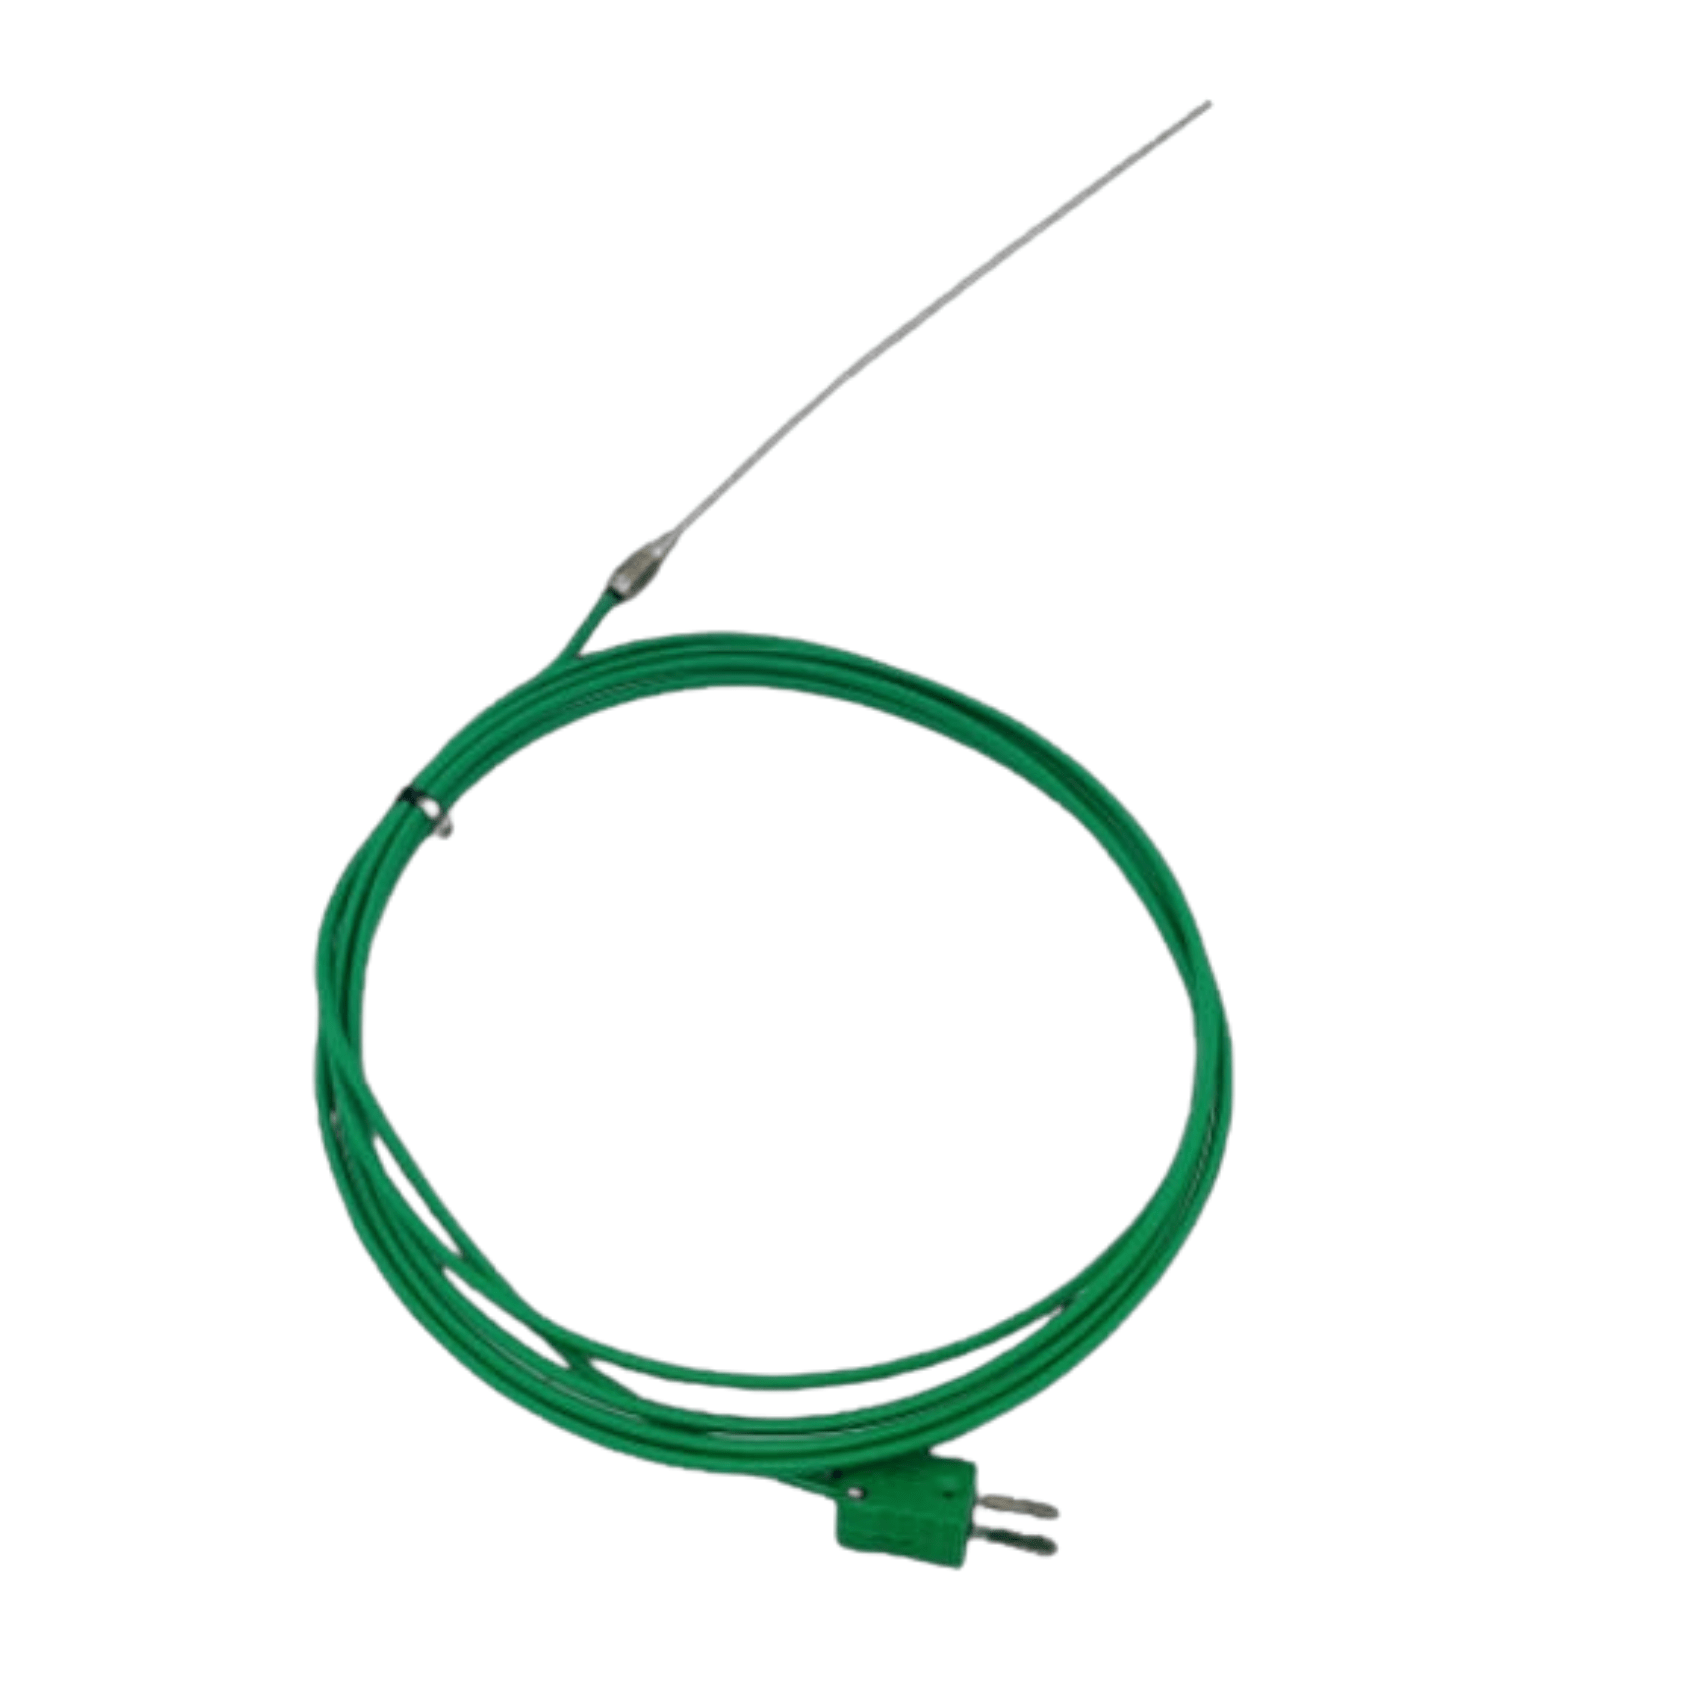 Un fil flexible avec une fiche verte dessus.
Nom du produit : Sonde isolée à haute température de Thermomètre.fr.